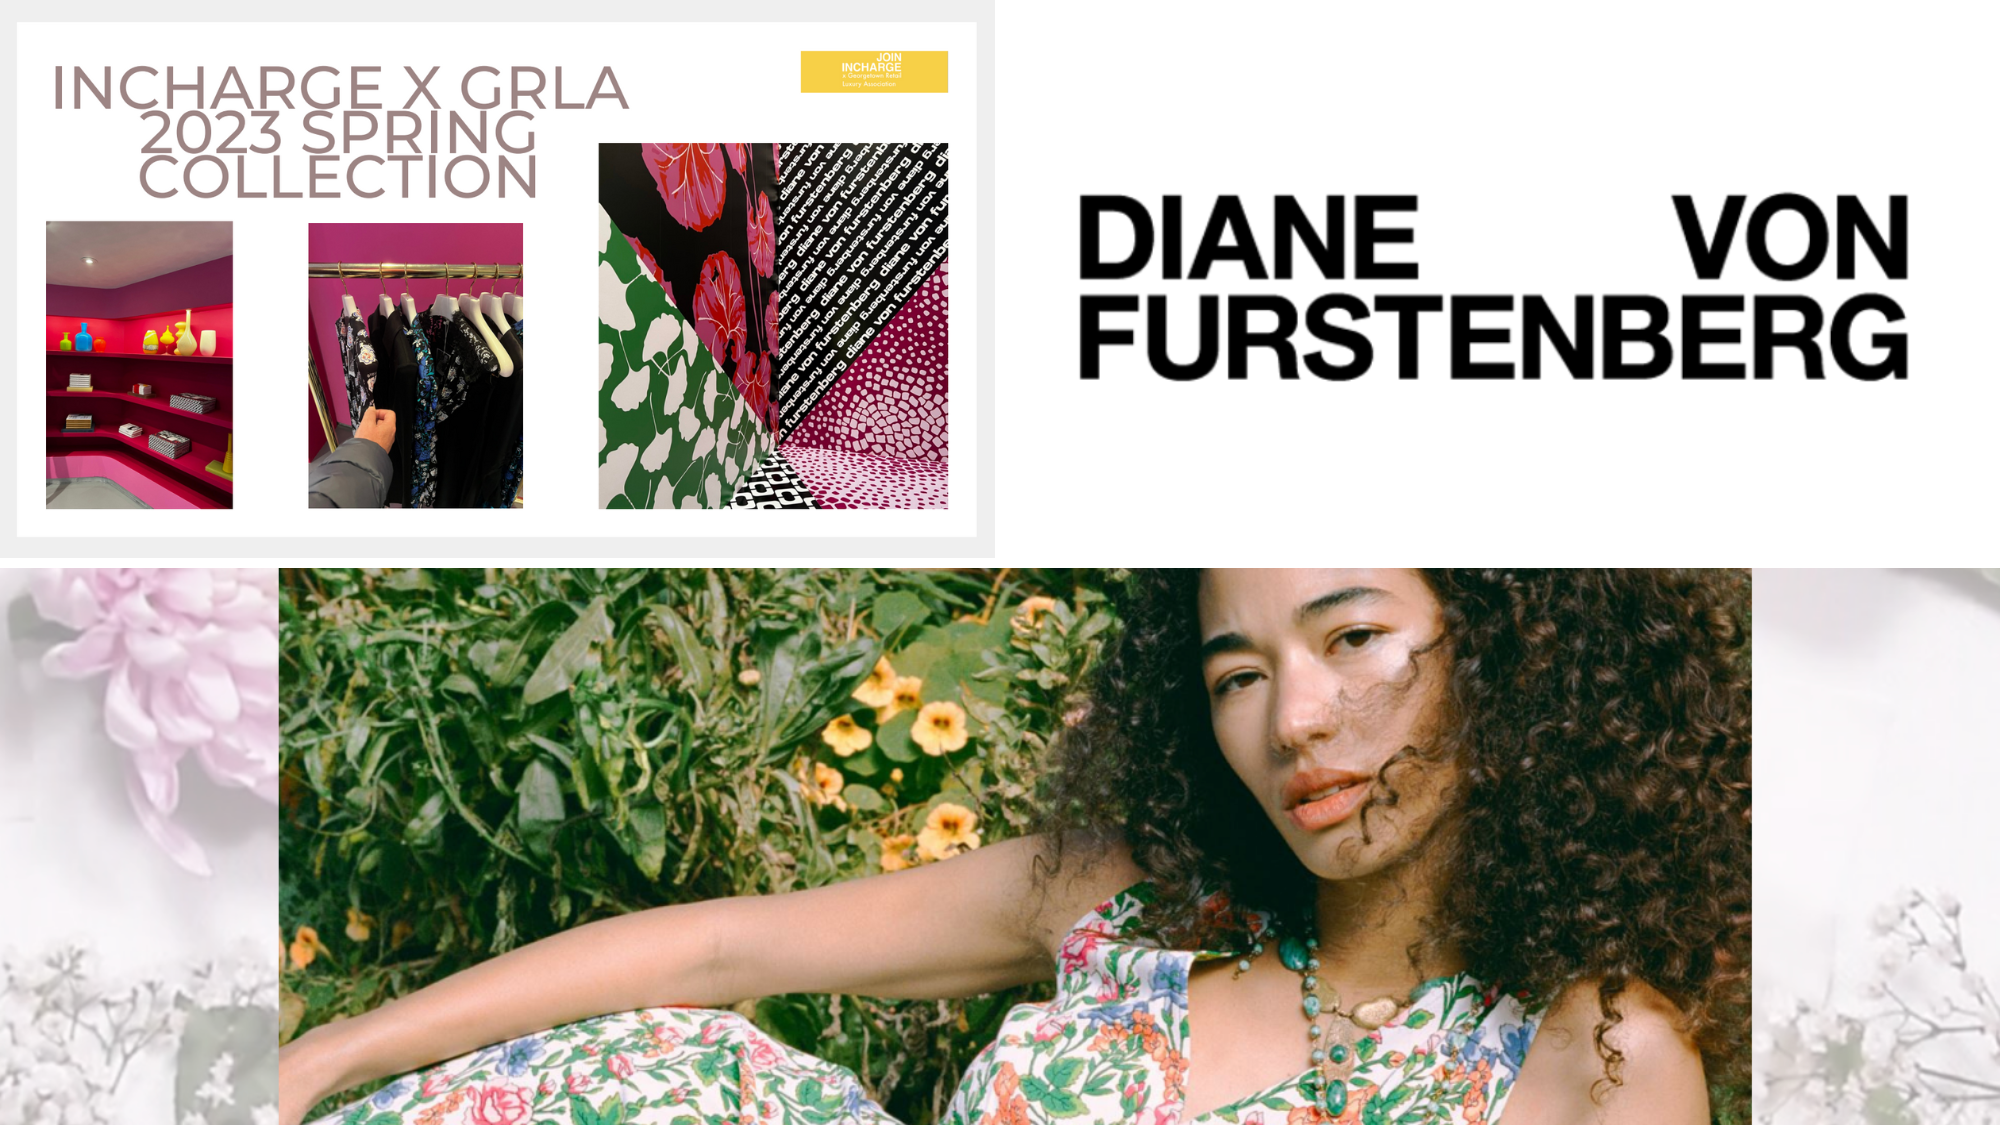 Diane von Furstenberg InCharge Case Competition